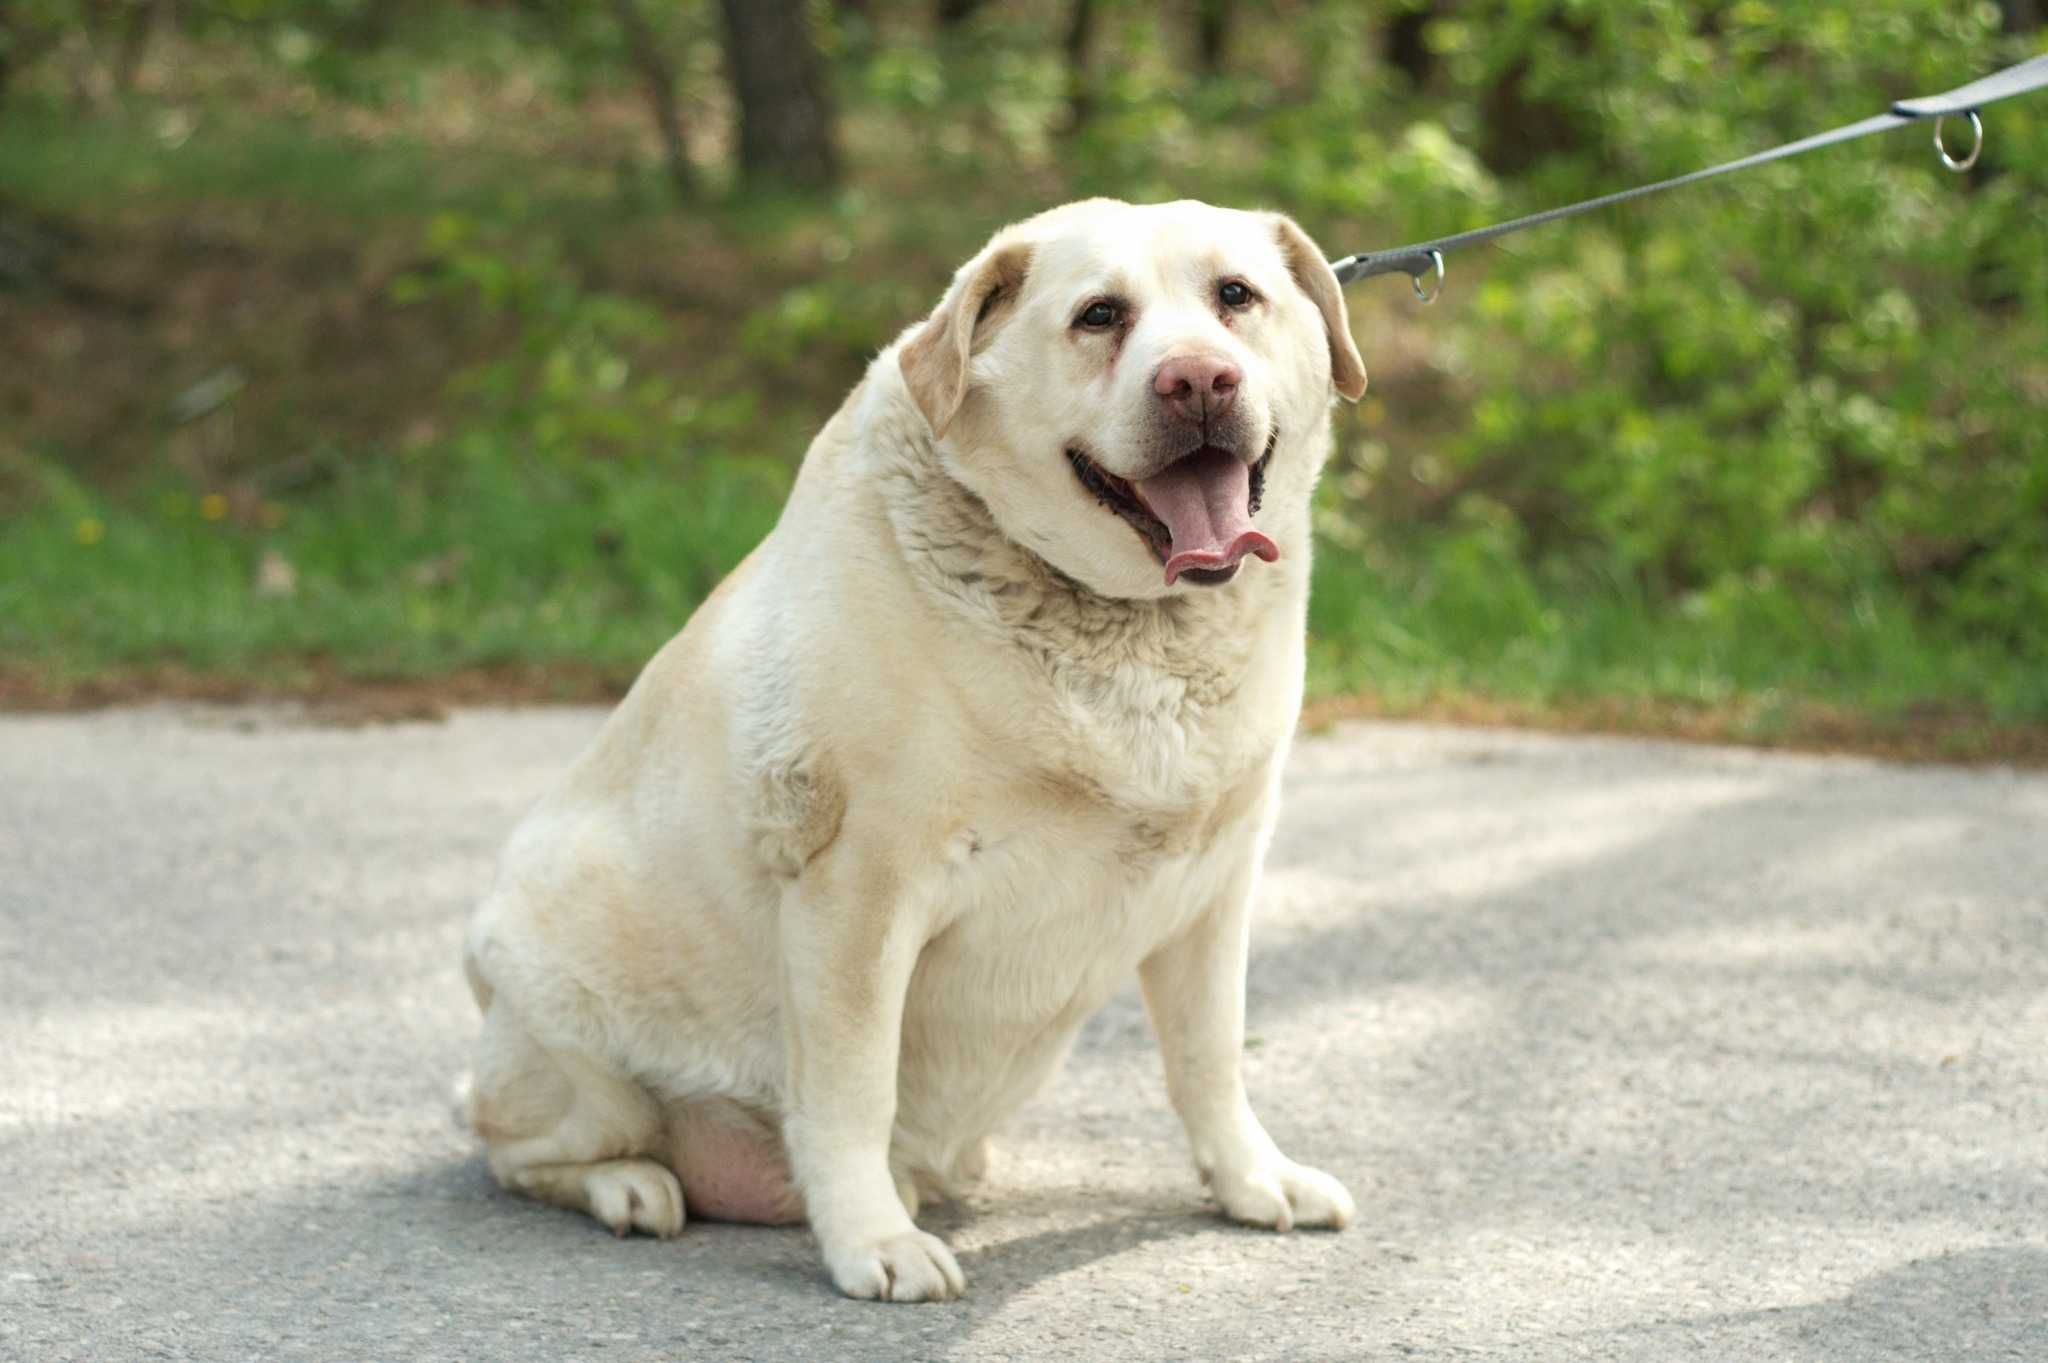 HENIX - cudowny psiak w typie Labradora do pilnej adopcji